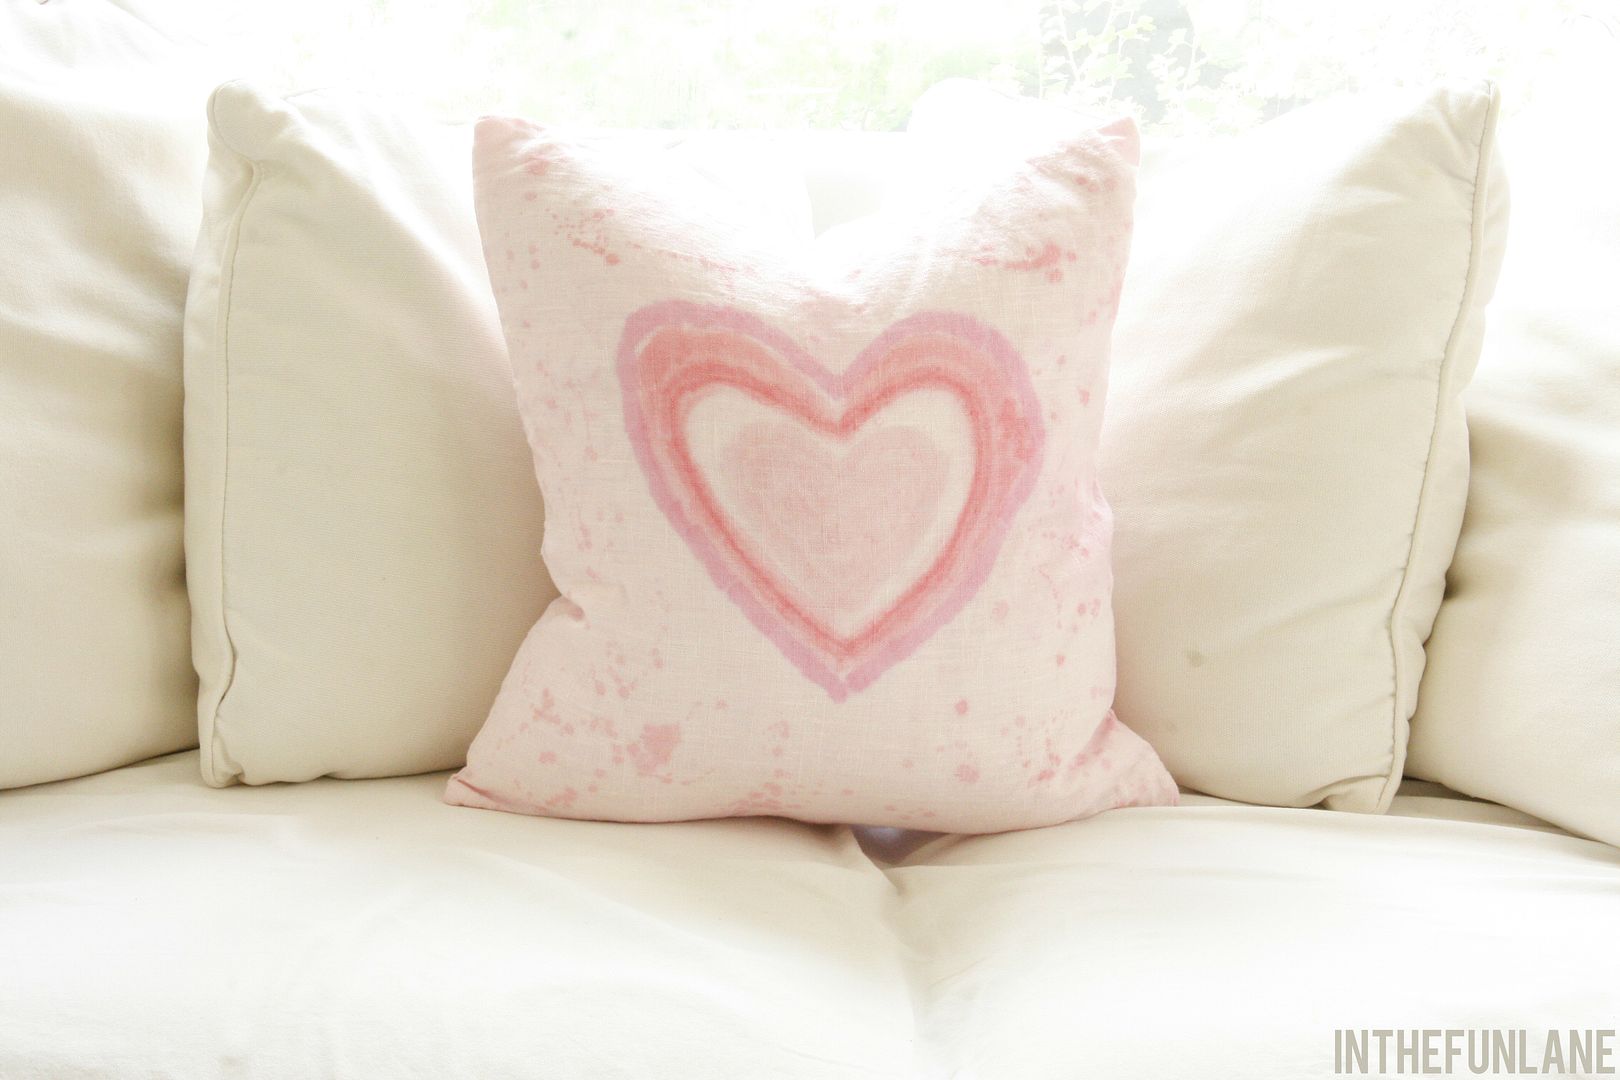 Heart Pillow photo heart-pillow_zpse1889f04.jpg